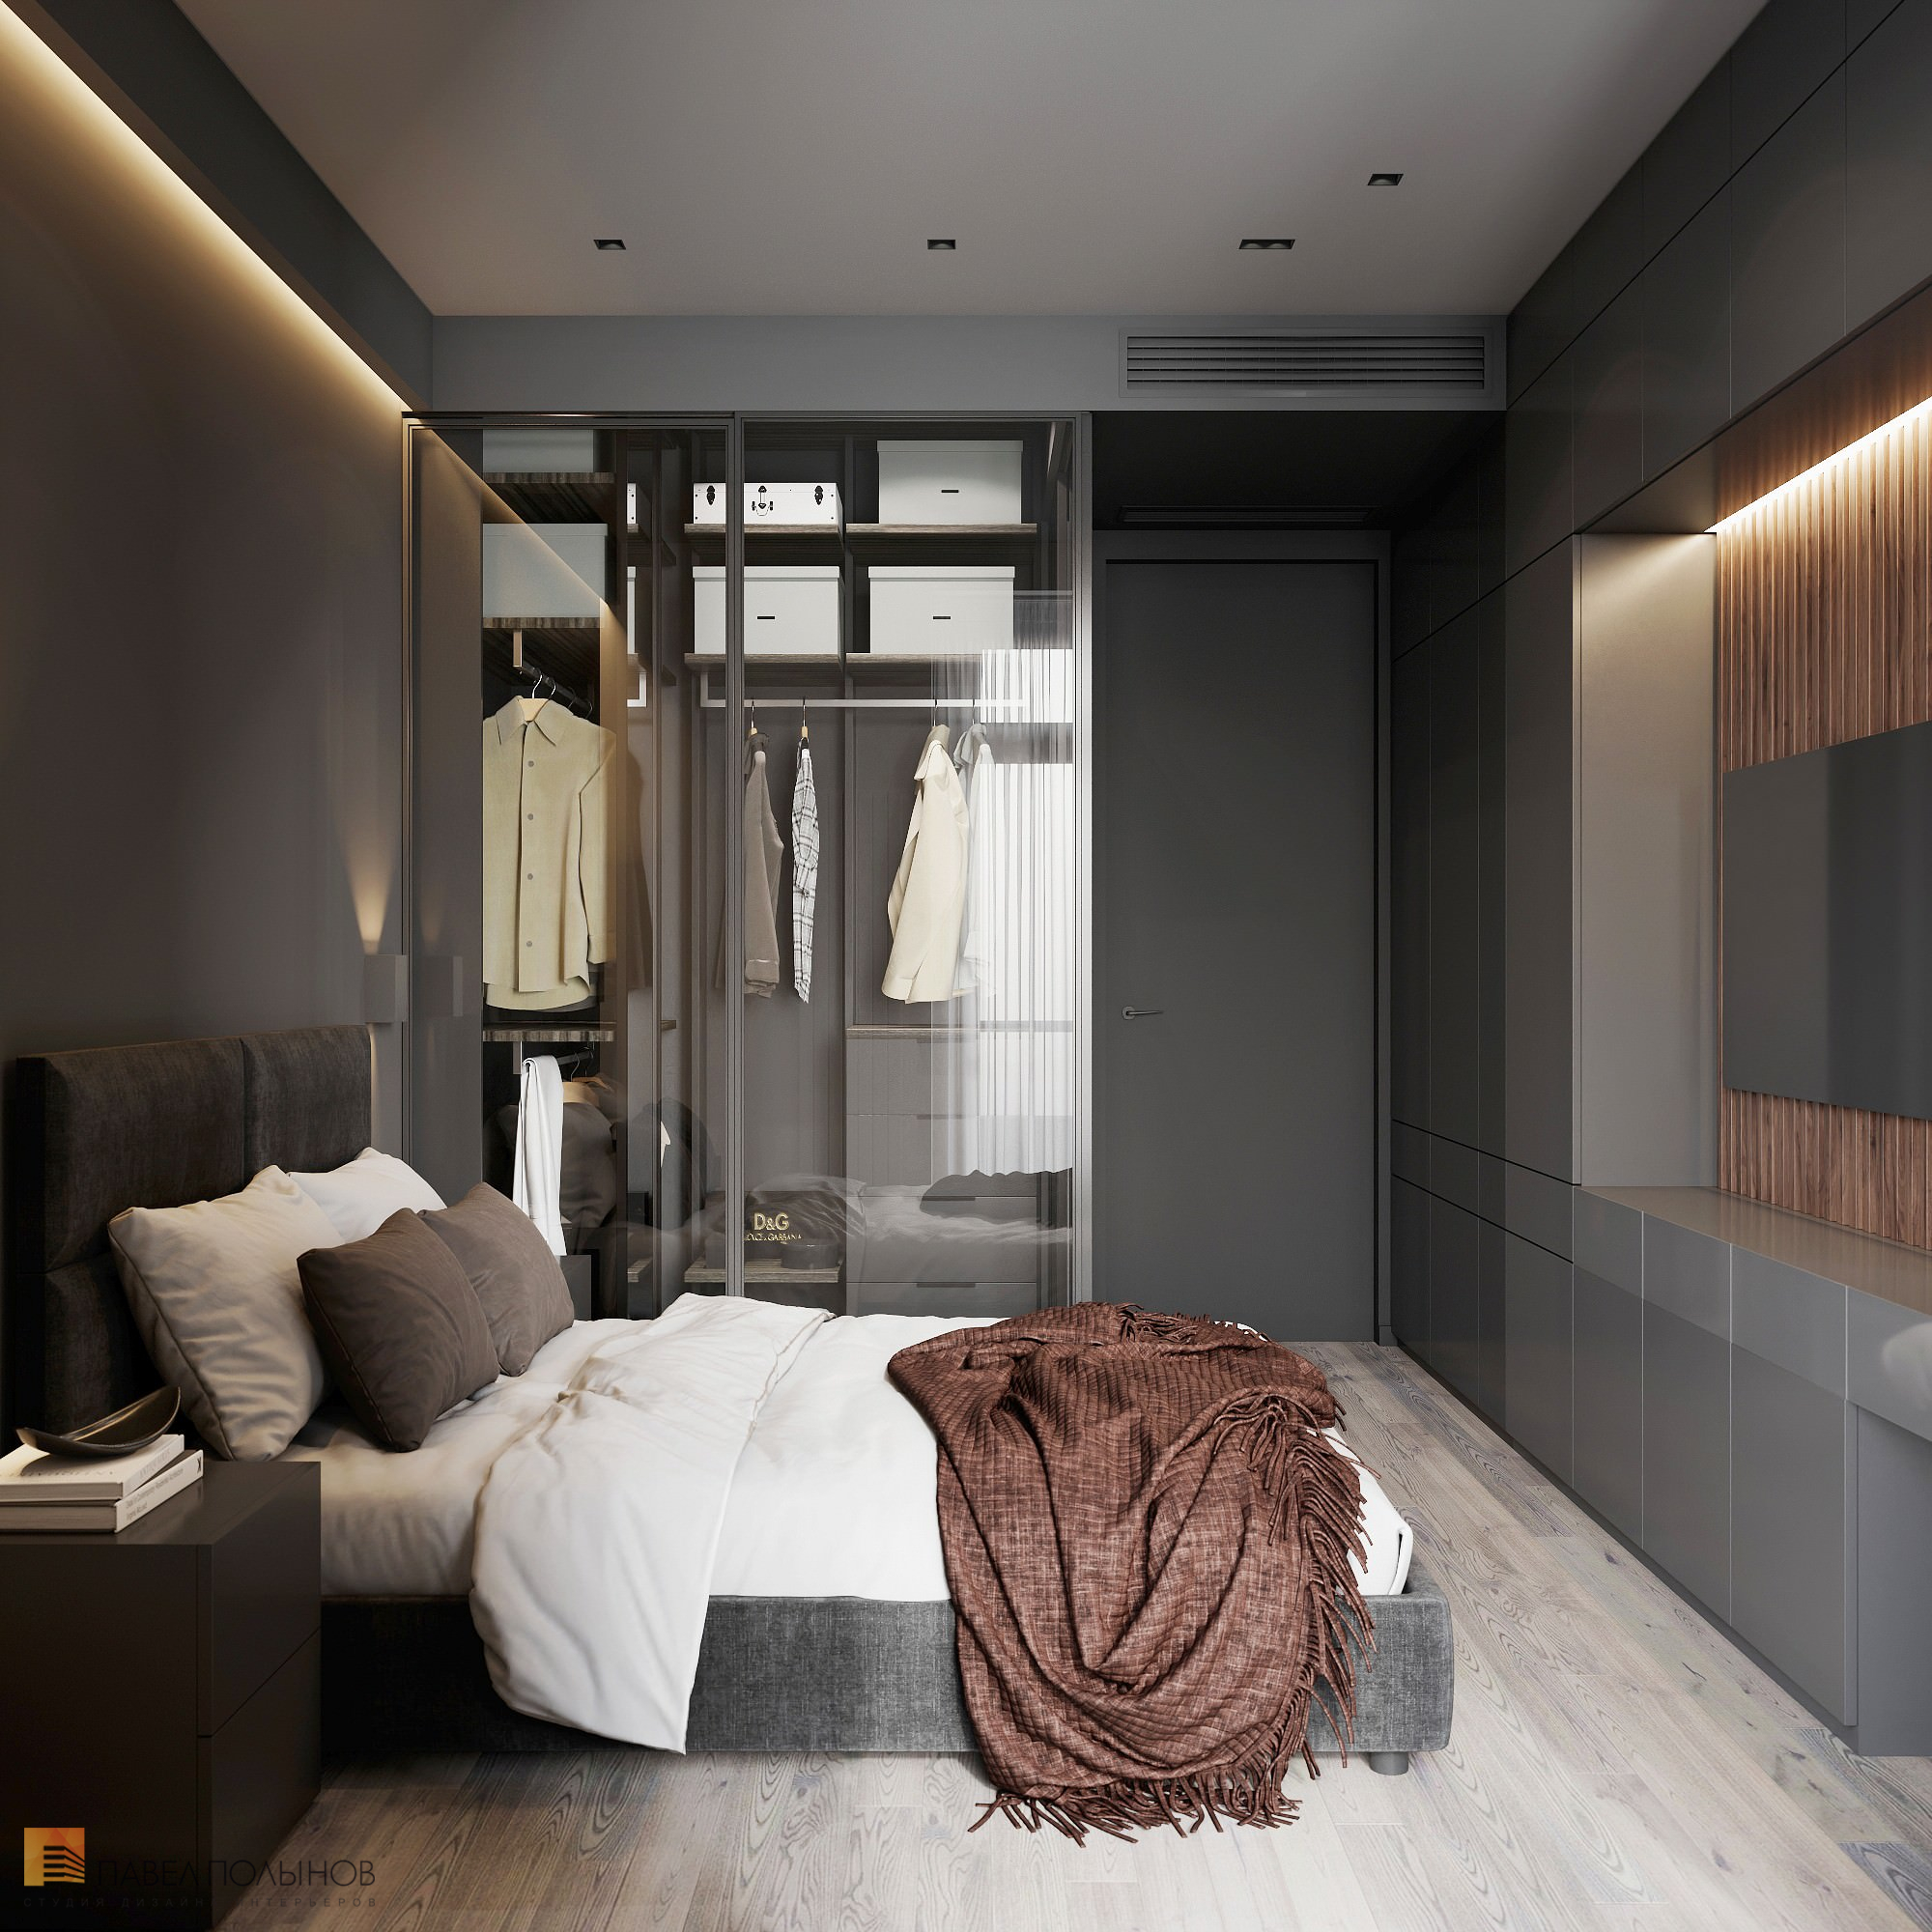 Фото дизайн интерьера спальни из проекта «Интерьер квартиры в современном стиле, ЖК «Символ», 64 кв.м.»